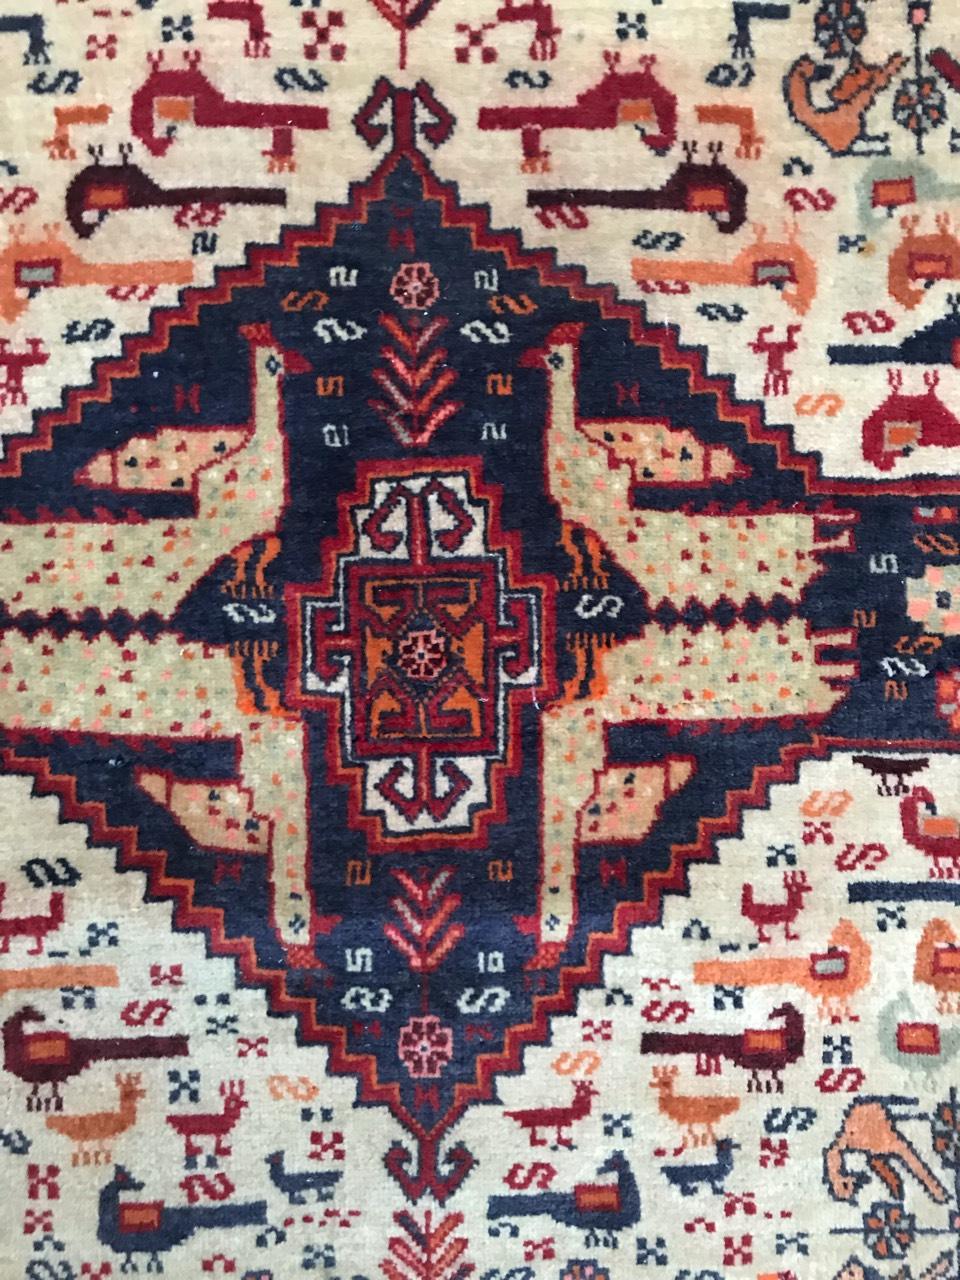 Joli tapis vintage de Ghashghai avec un design tribal avec des animaux, de belles couleurs avec du bleu, du rouge et de l'orange. Noué finement à la main avec du velours de laine sur une base de laine.

✨✨✨
